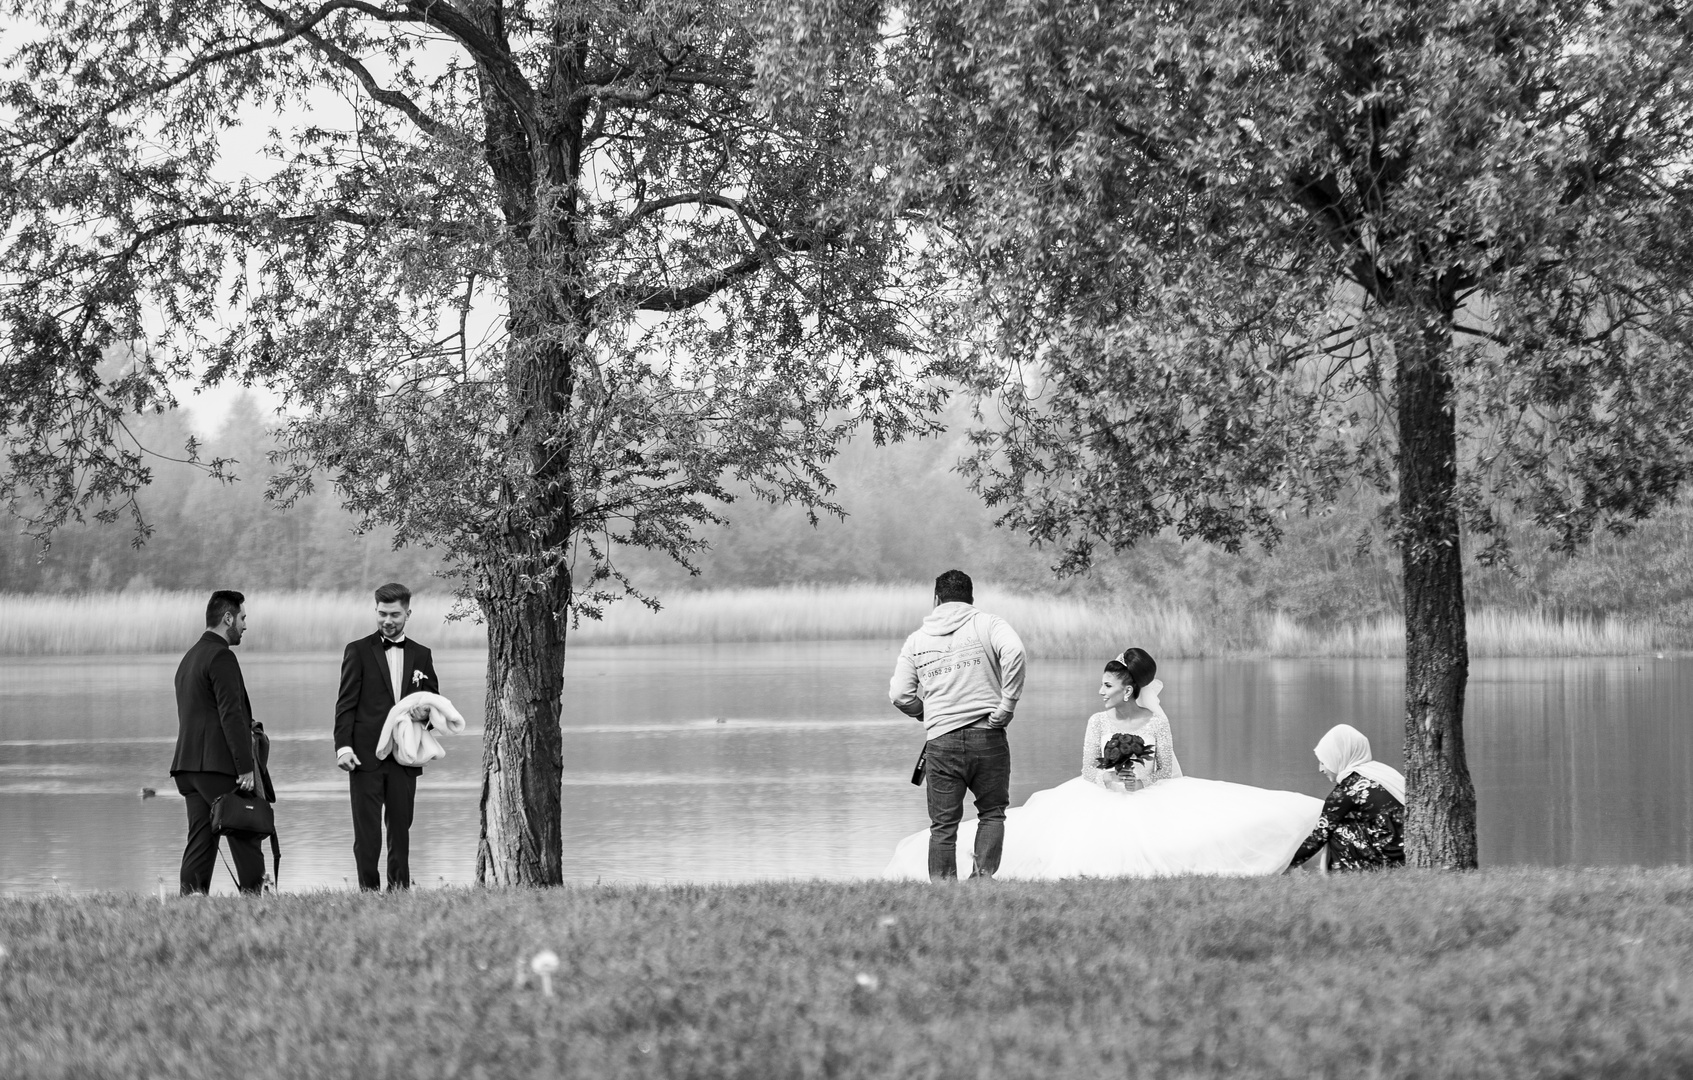 WEDDING AT THE LAKE